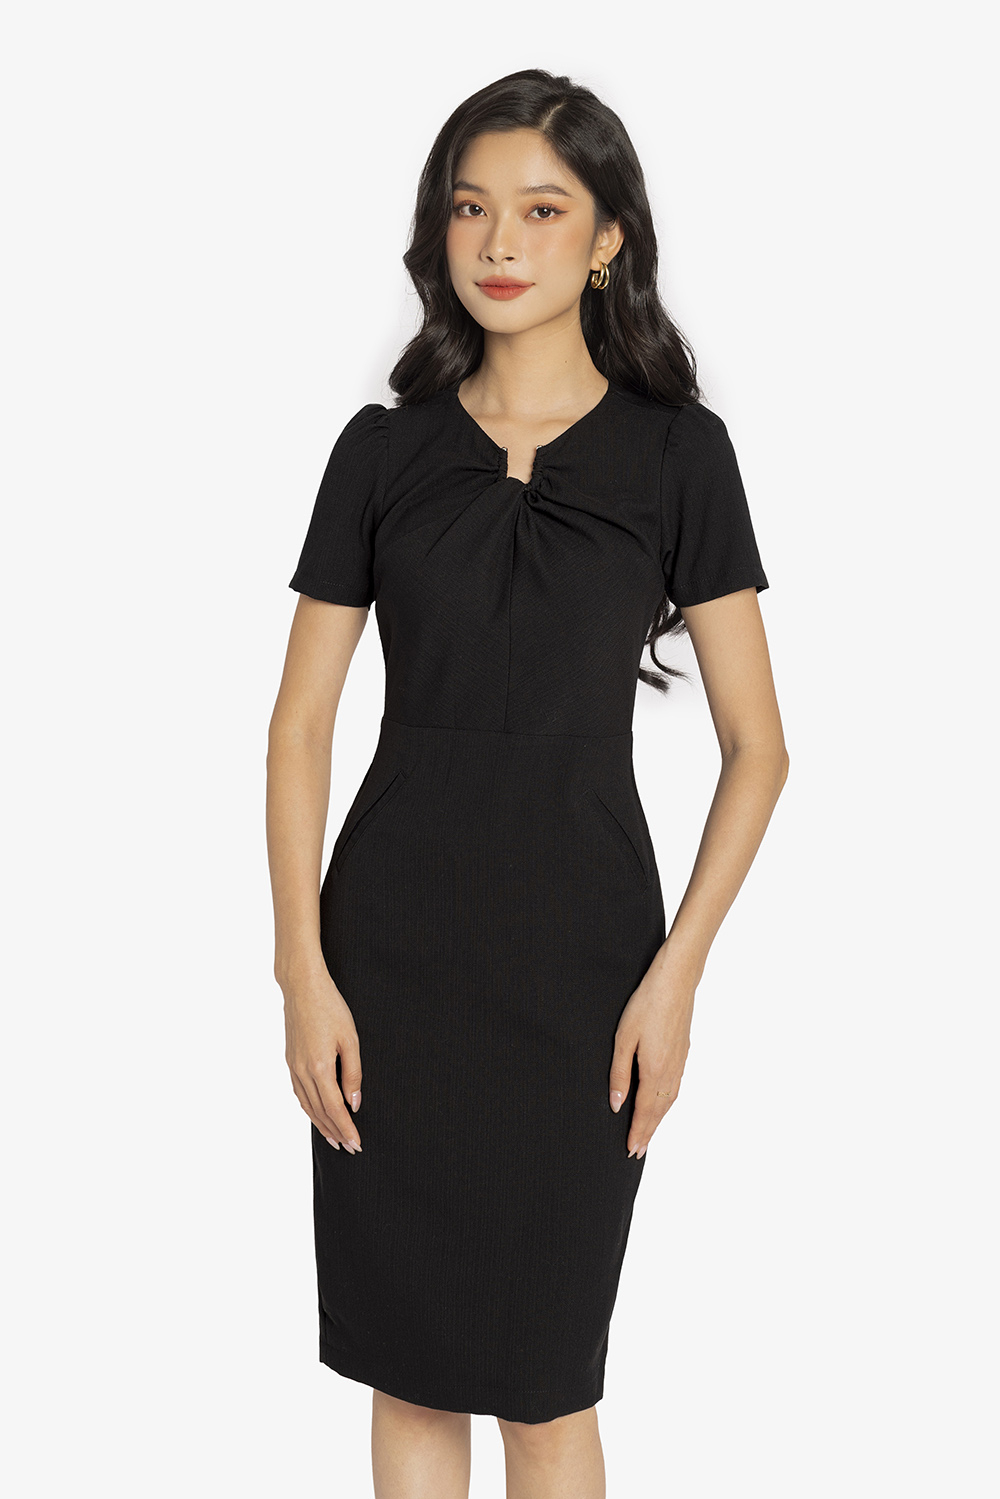 Đầm công sở màu đen dáng ôm cổ cách điệu KK140-08 | Thời trang công sở K&K  Fashion